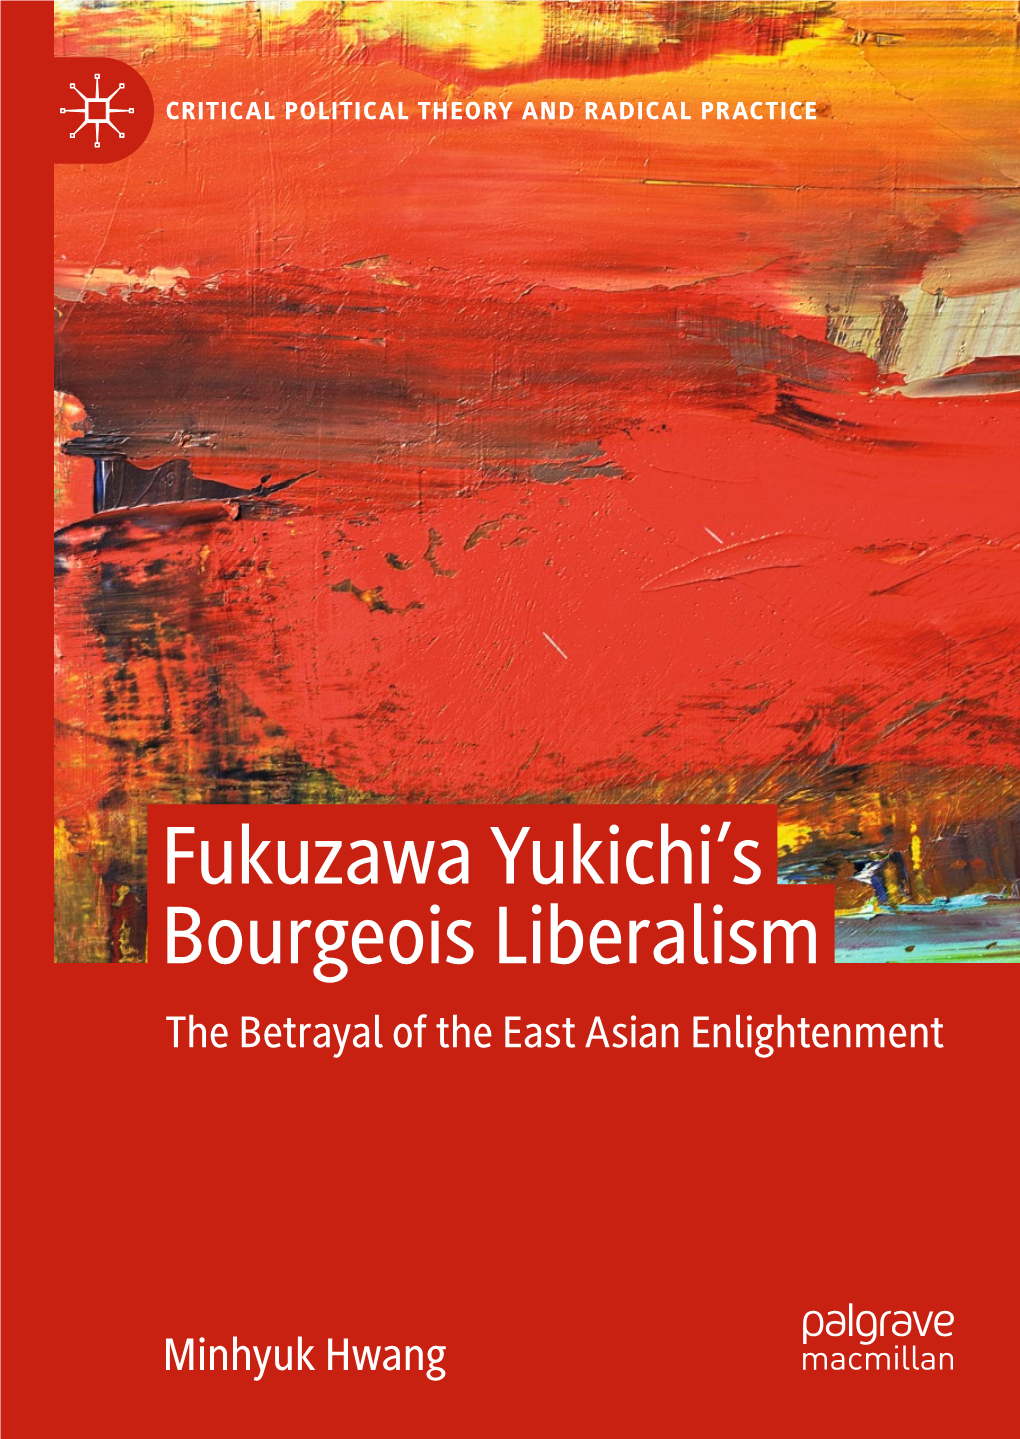 Fukuzawa Yukichi's Bourgeois Liberalism